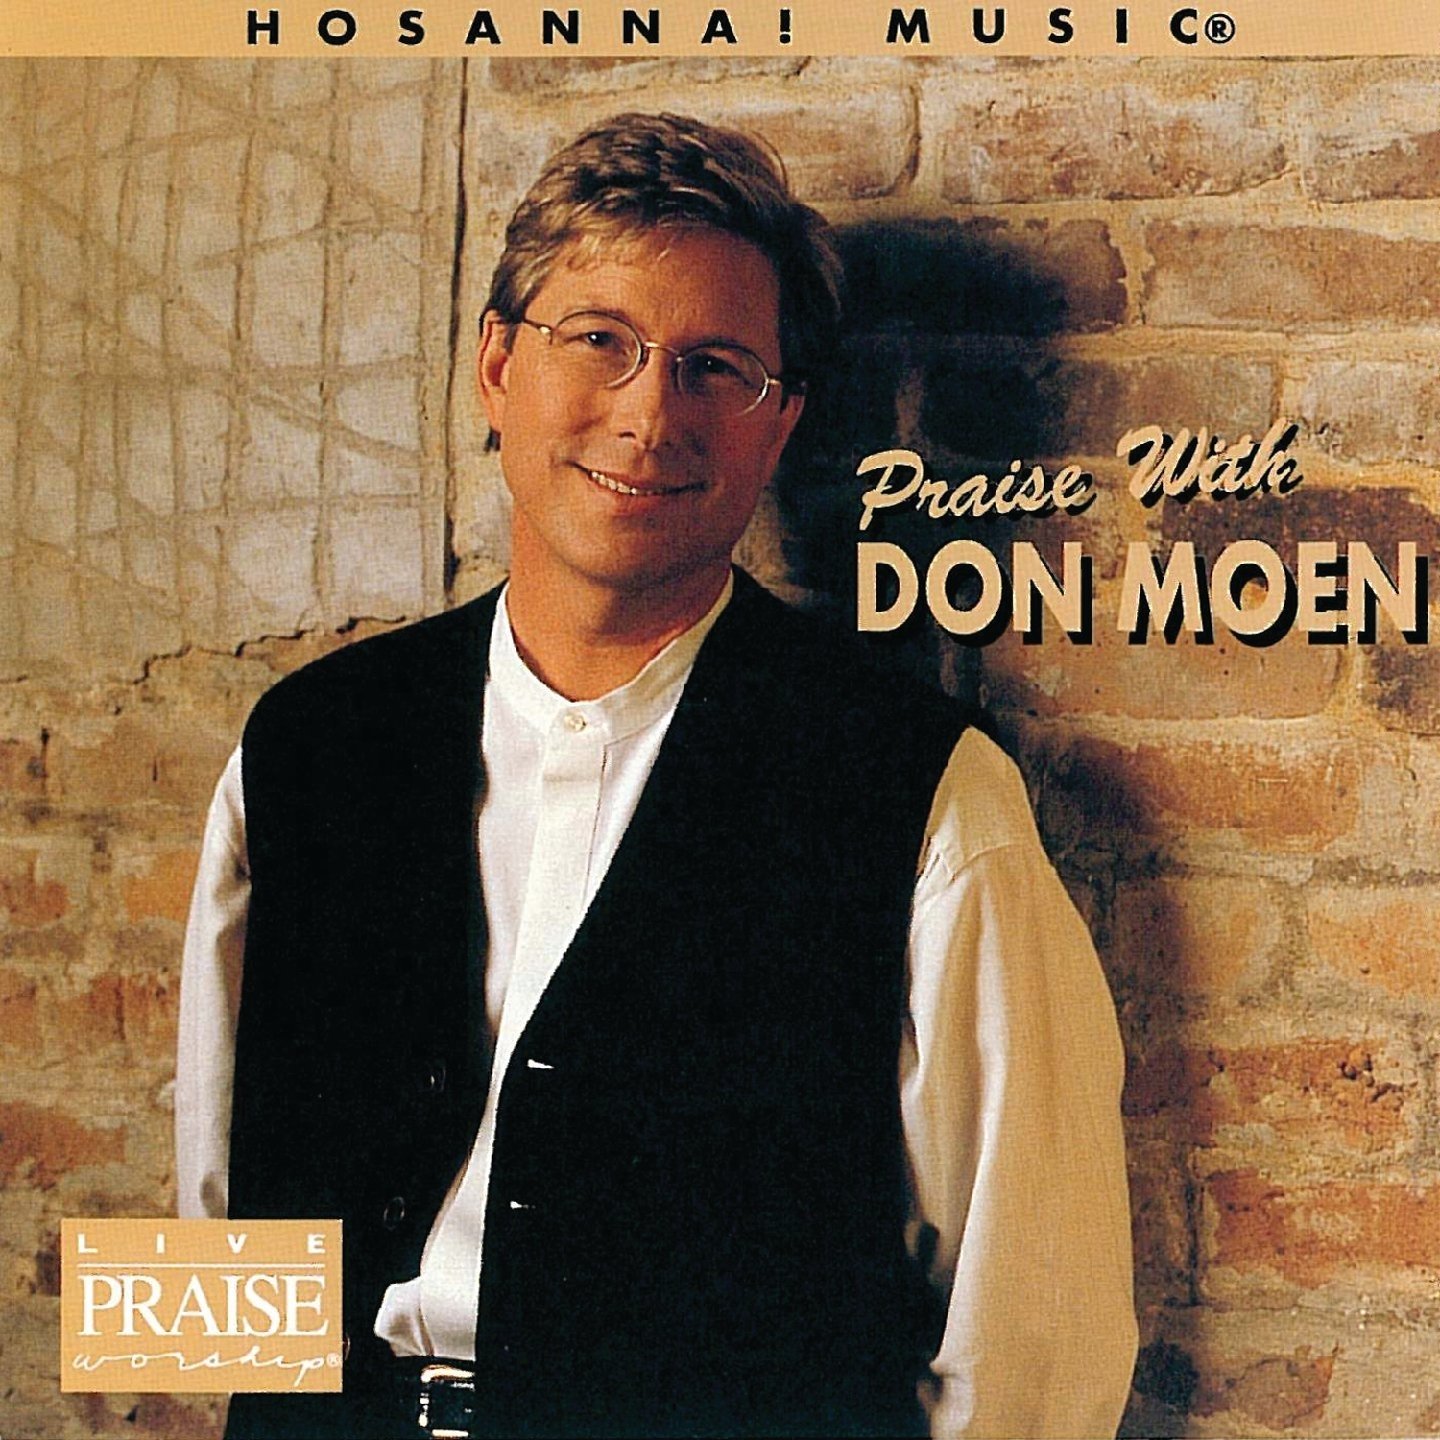 Don moen album free download